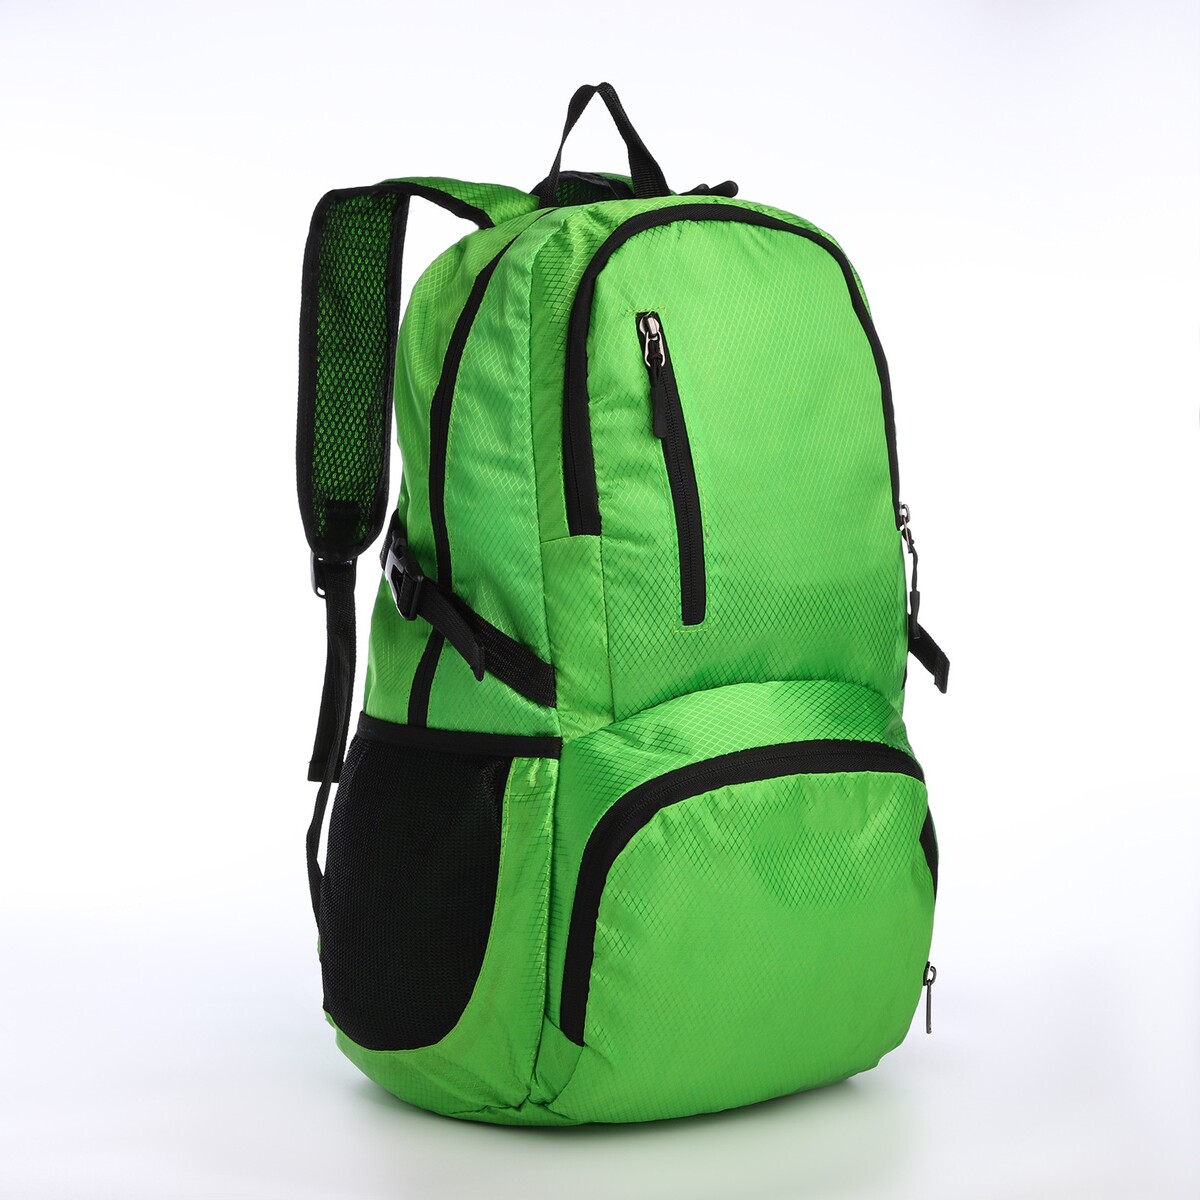 Рюкзак складной на молнии из текстиля, 5 карманов, цвет зеленый рюкзак школьный из текстиля на молнии 7 карманов зеленый